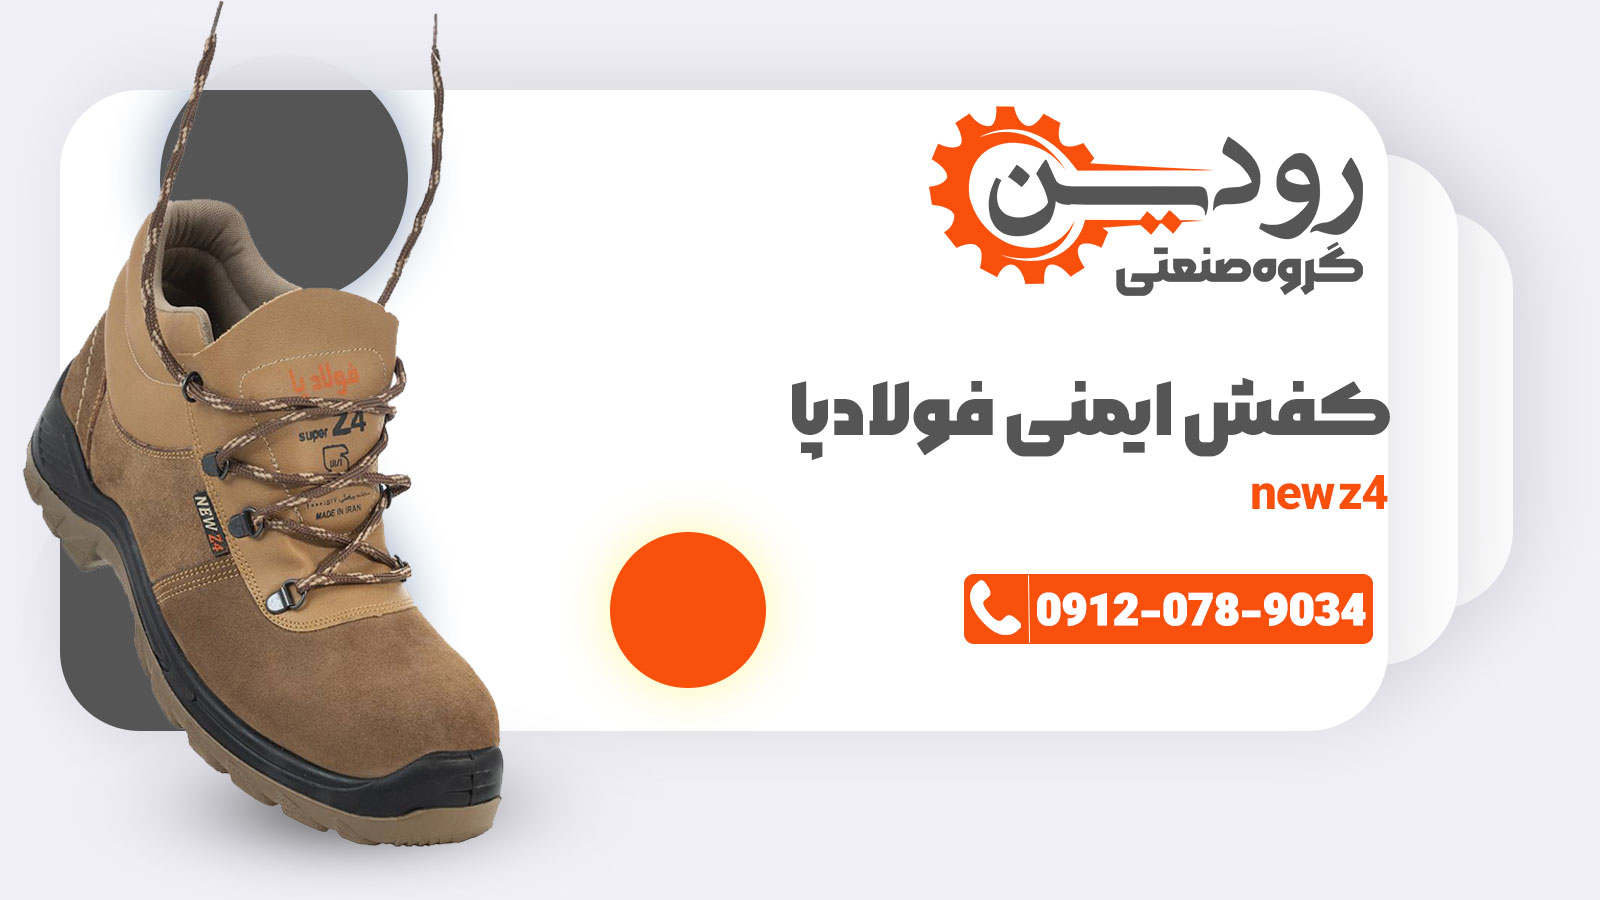 در مرکز خرید کفش ایمنی فولاد پا در تبریز قیمت های بسیار ارزانی به شما عزیزان ارائه میگردد.